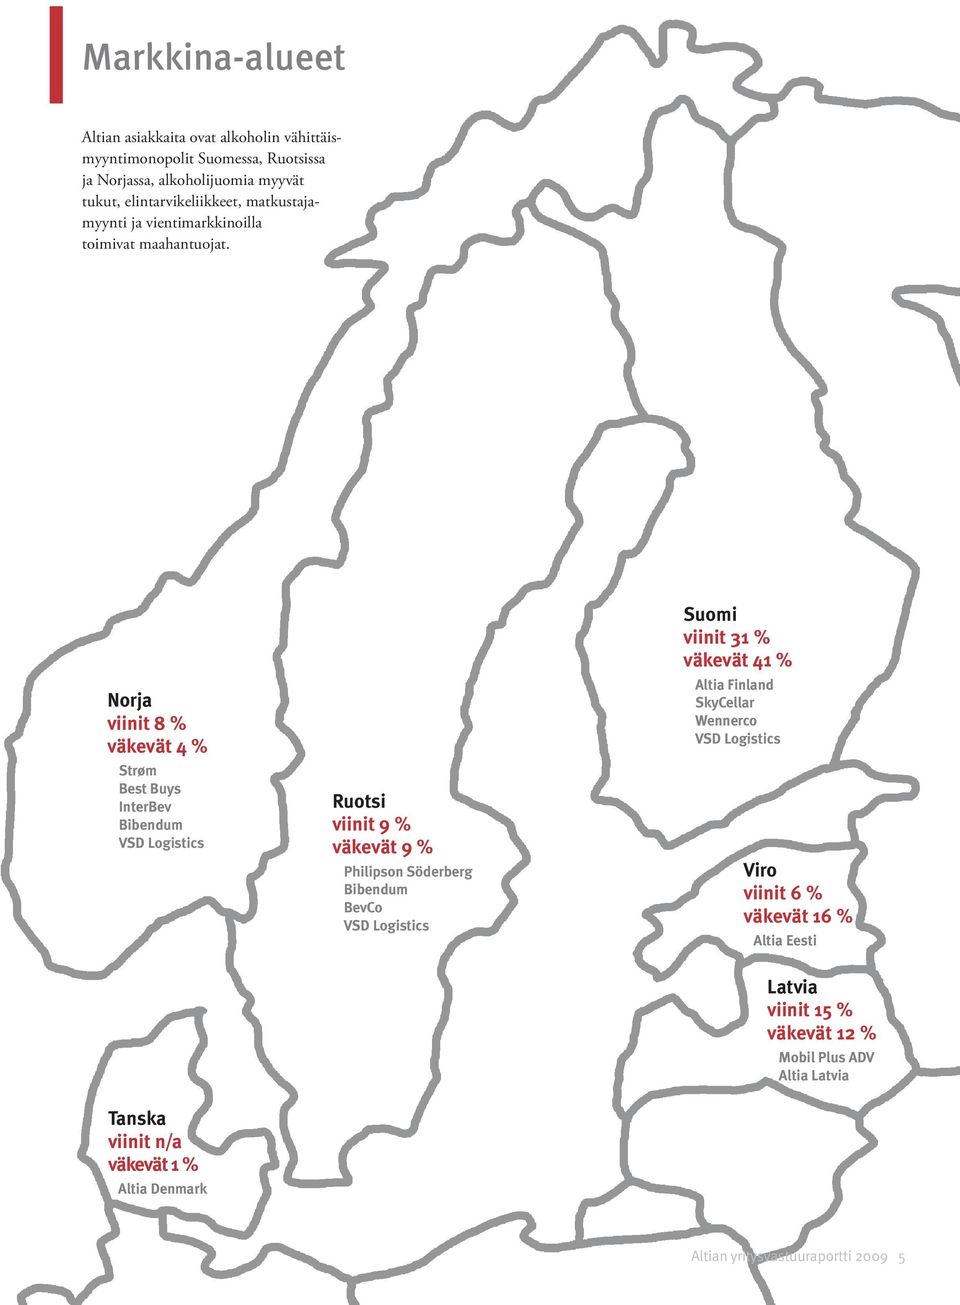 Norja viinit 8 % väkevät 4 % Strøm Best Buys InterBev Bibendum VSD Logistics Ruotsi viinit 9 % väkevät 9 % Philipson Söderberg Bibendum BevCo VSD Logistics